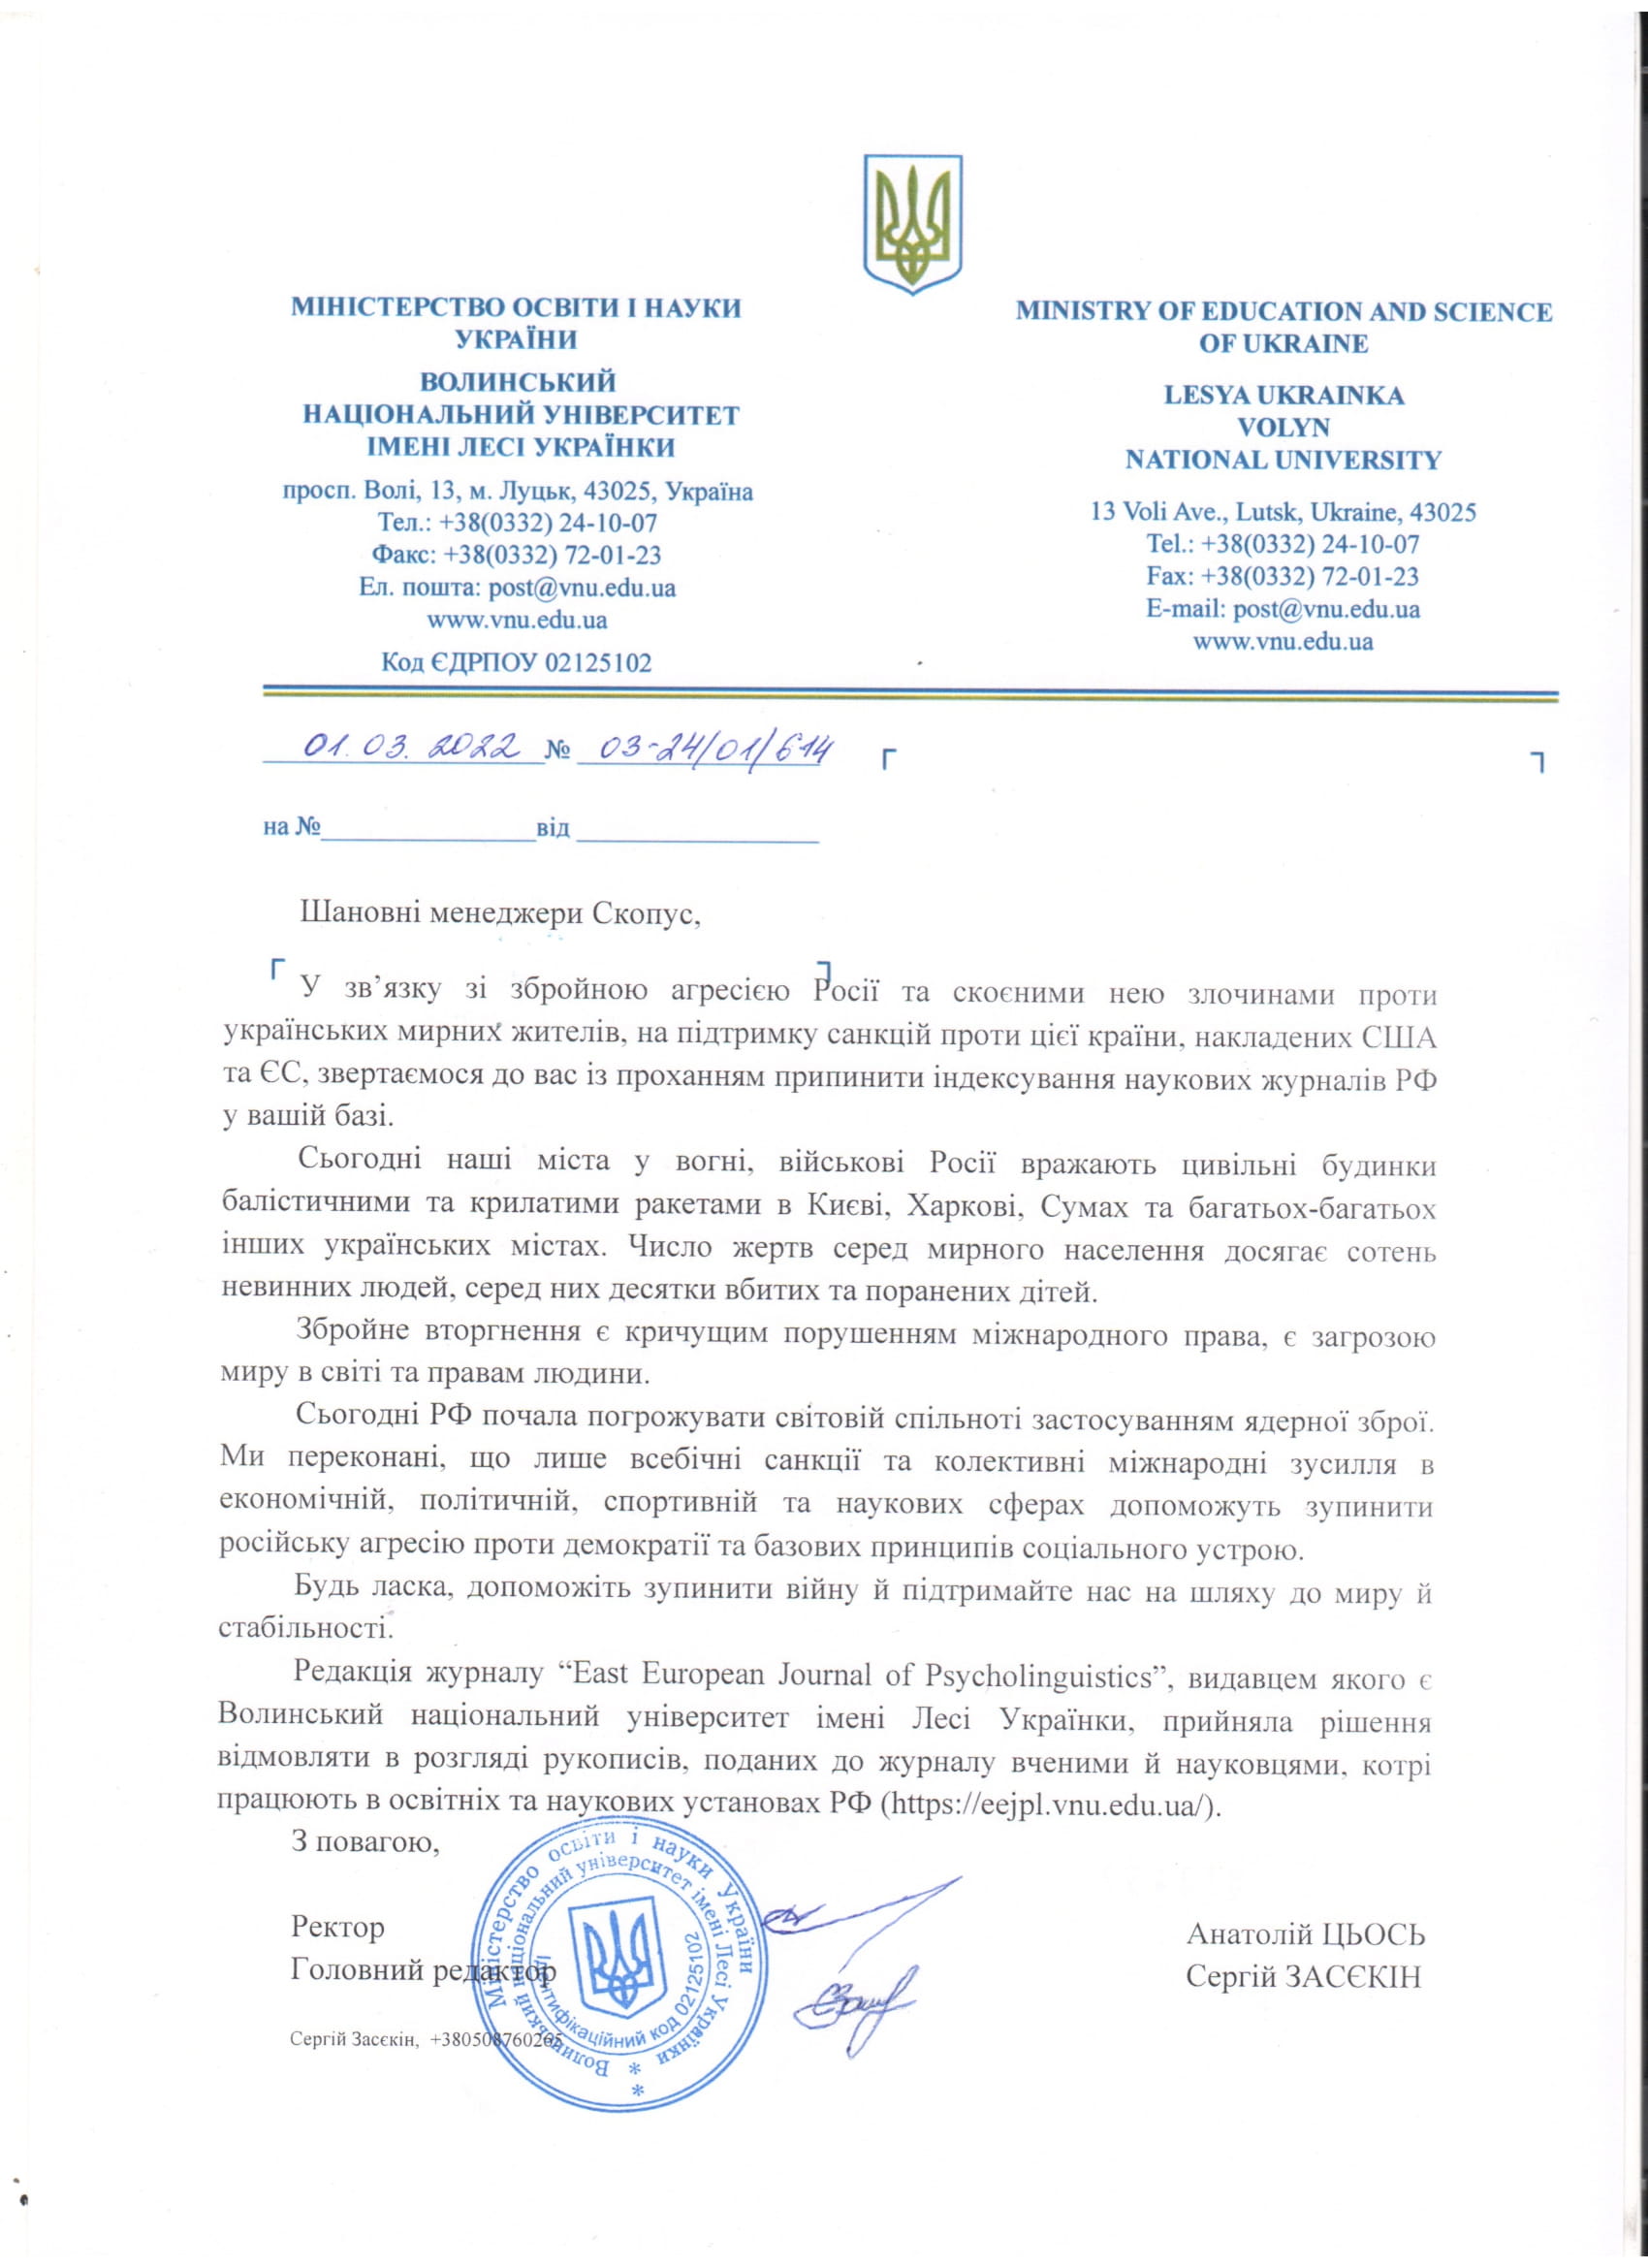 Університет звернувся до керівництва бази даних Scopus із проханням припинити індексування наукових журналів РФ